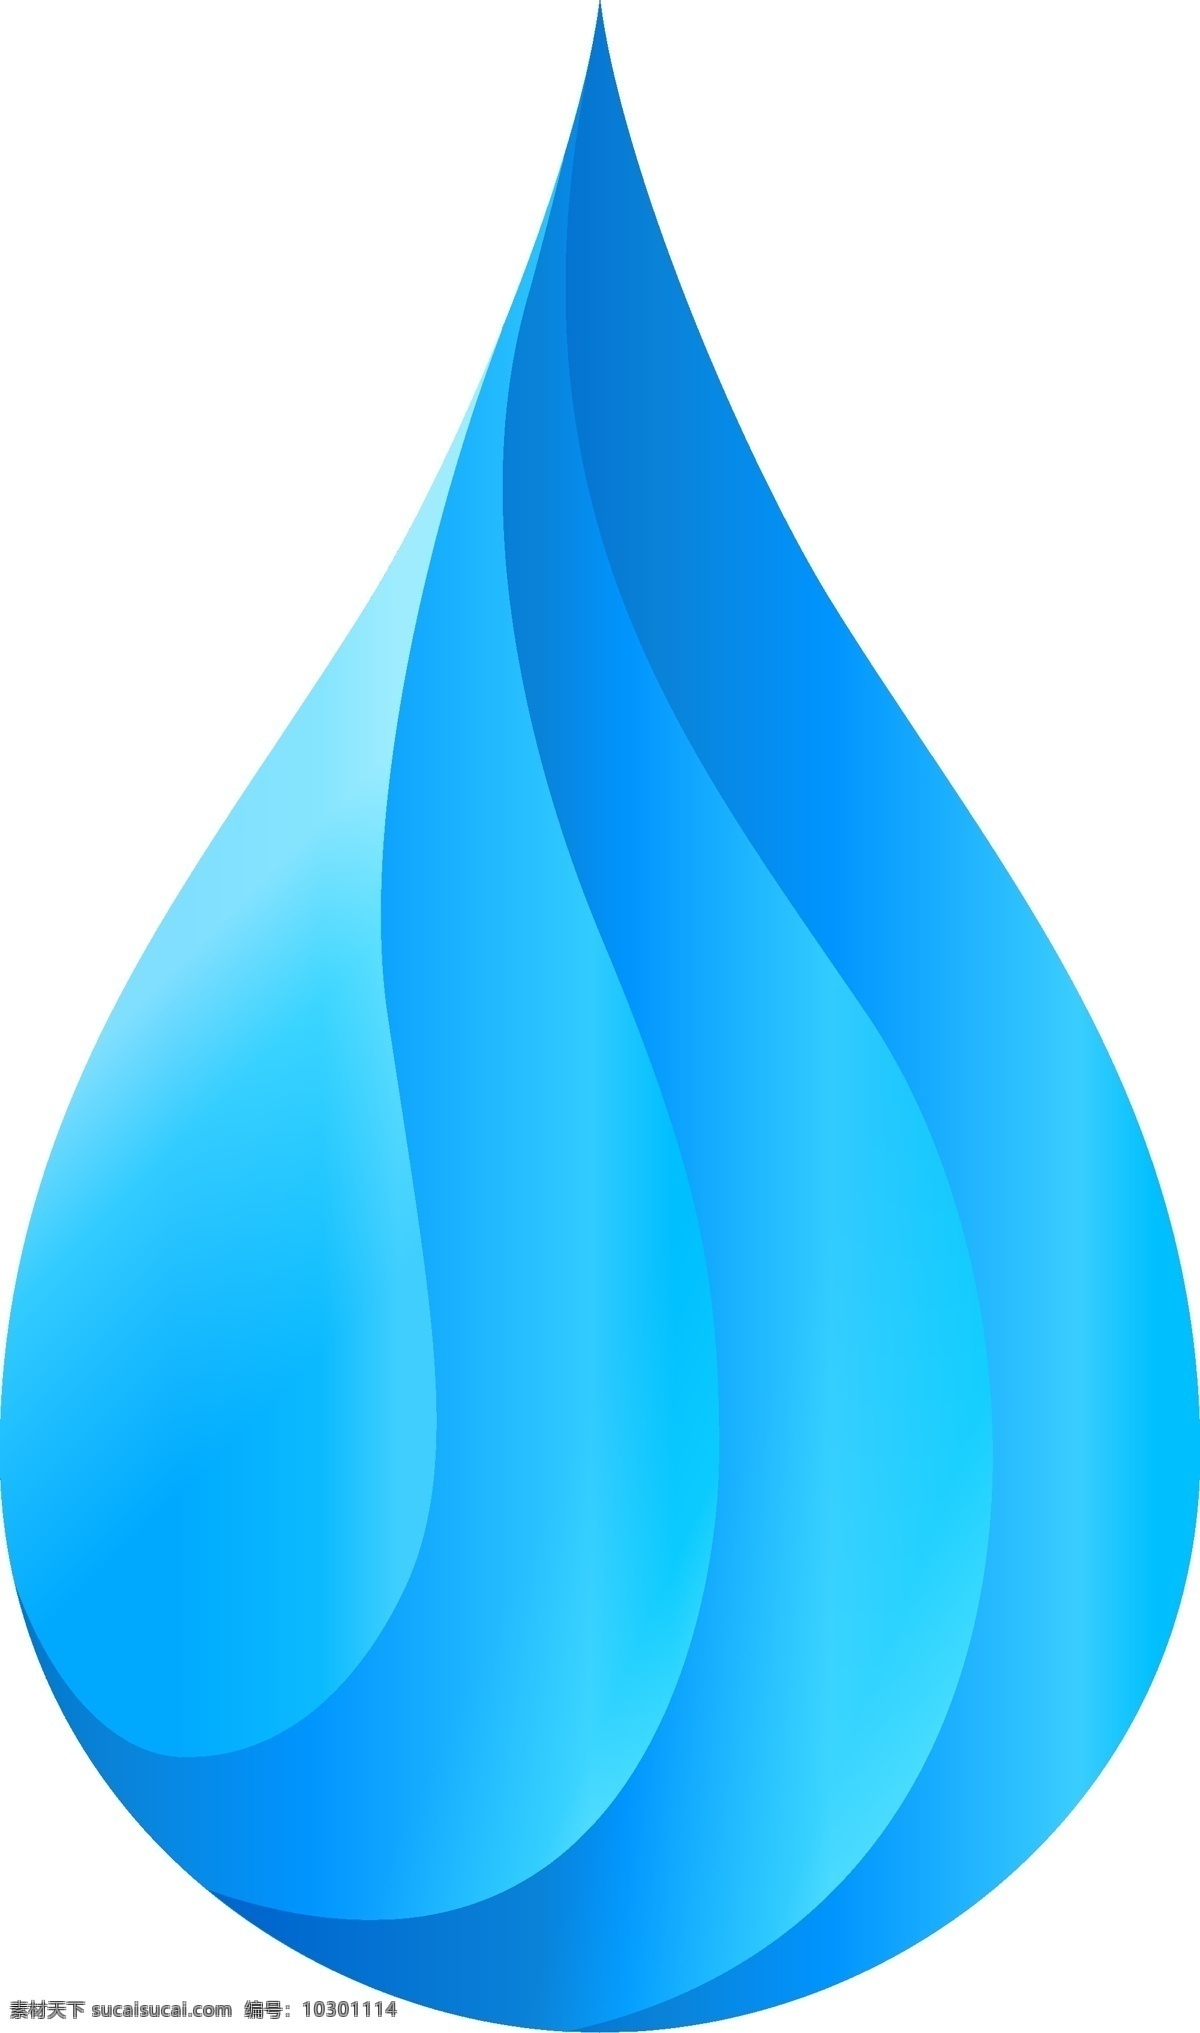 水滴图片 水滴 水 一滴水 水标志 节约用水 蓝色水滴 雨滴 眼泪 泪滴 logo设计